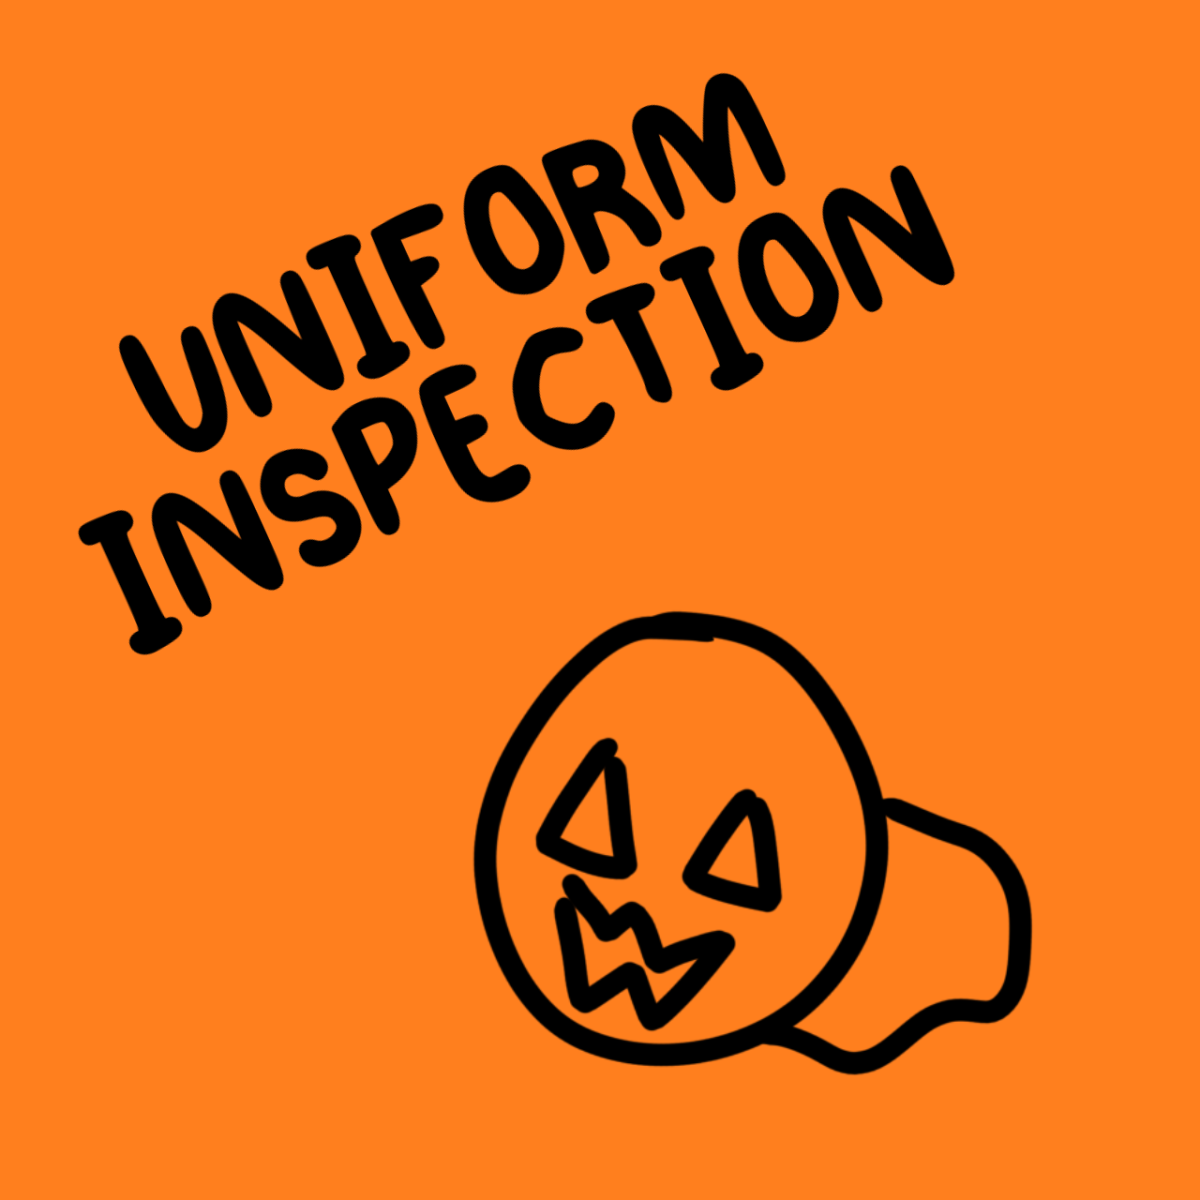 Uniform Inspection